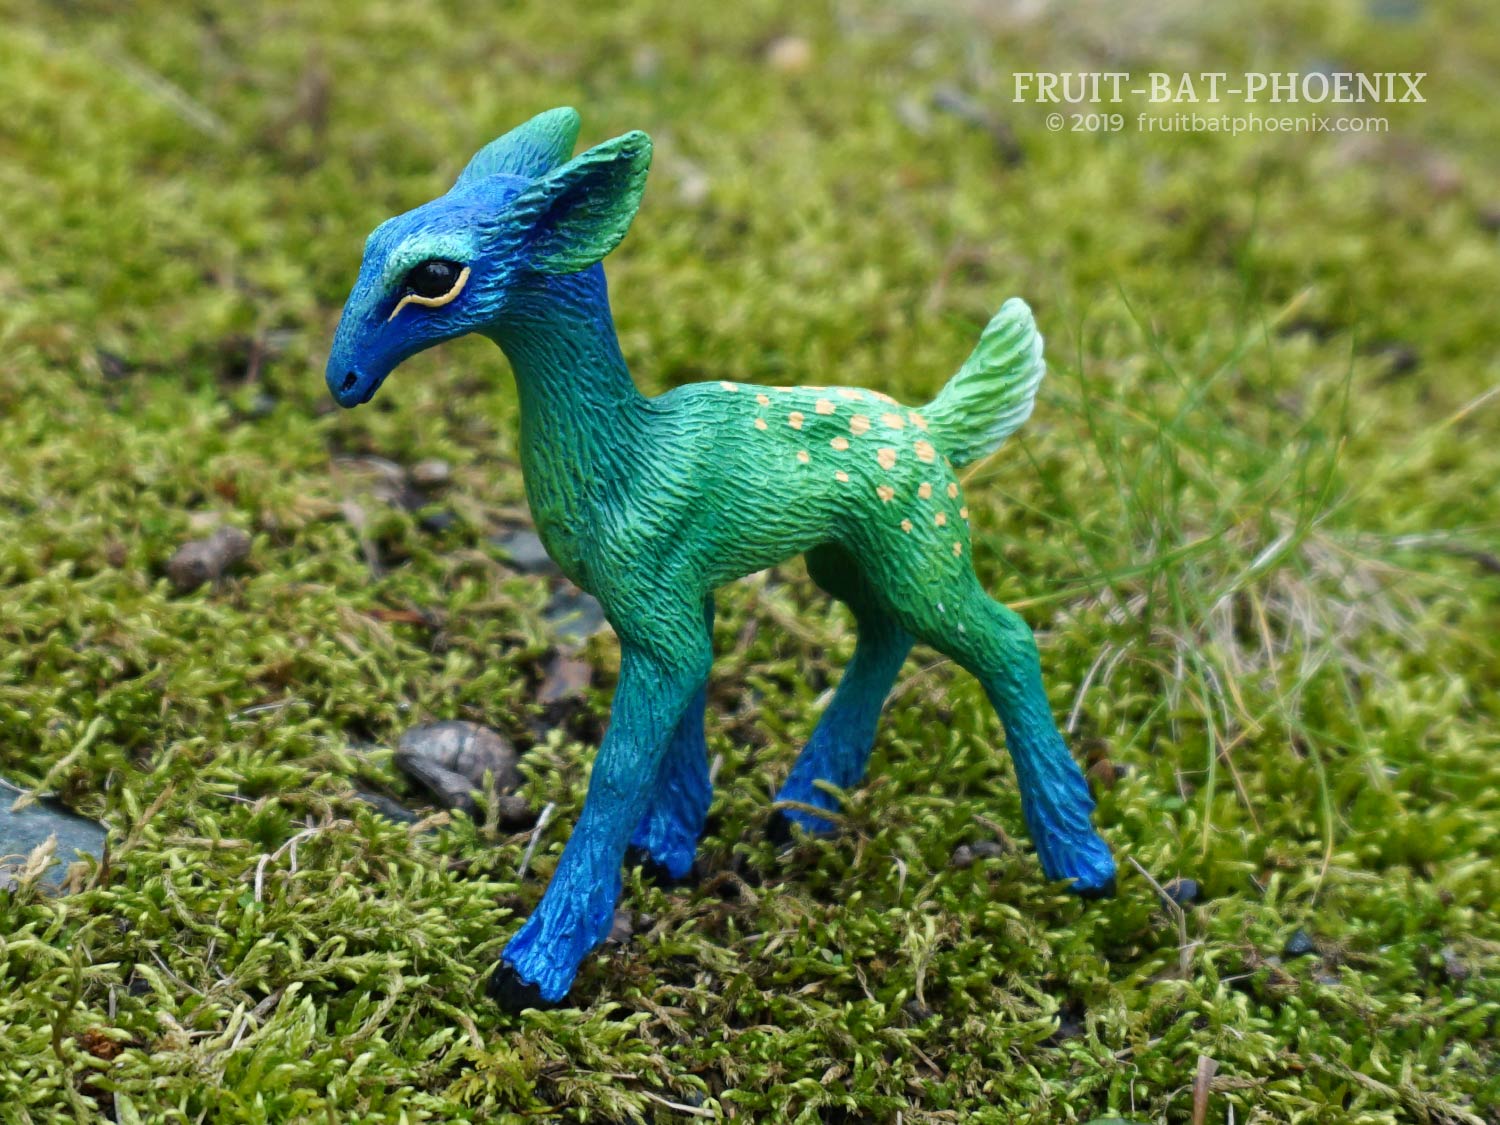 Bluegreen Fawn resin cast baby deer sculpture